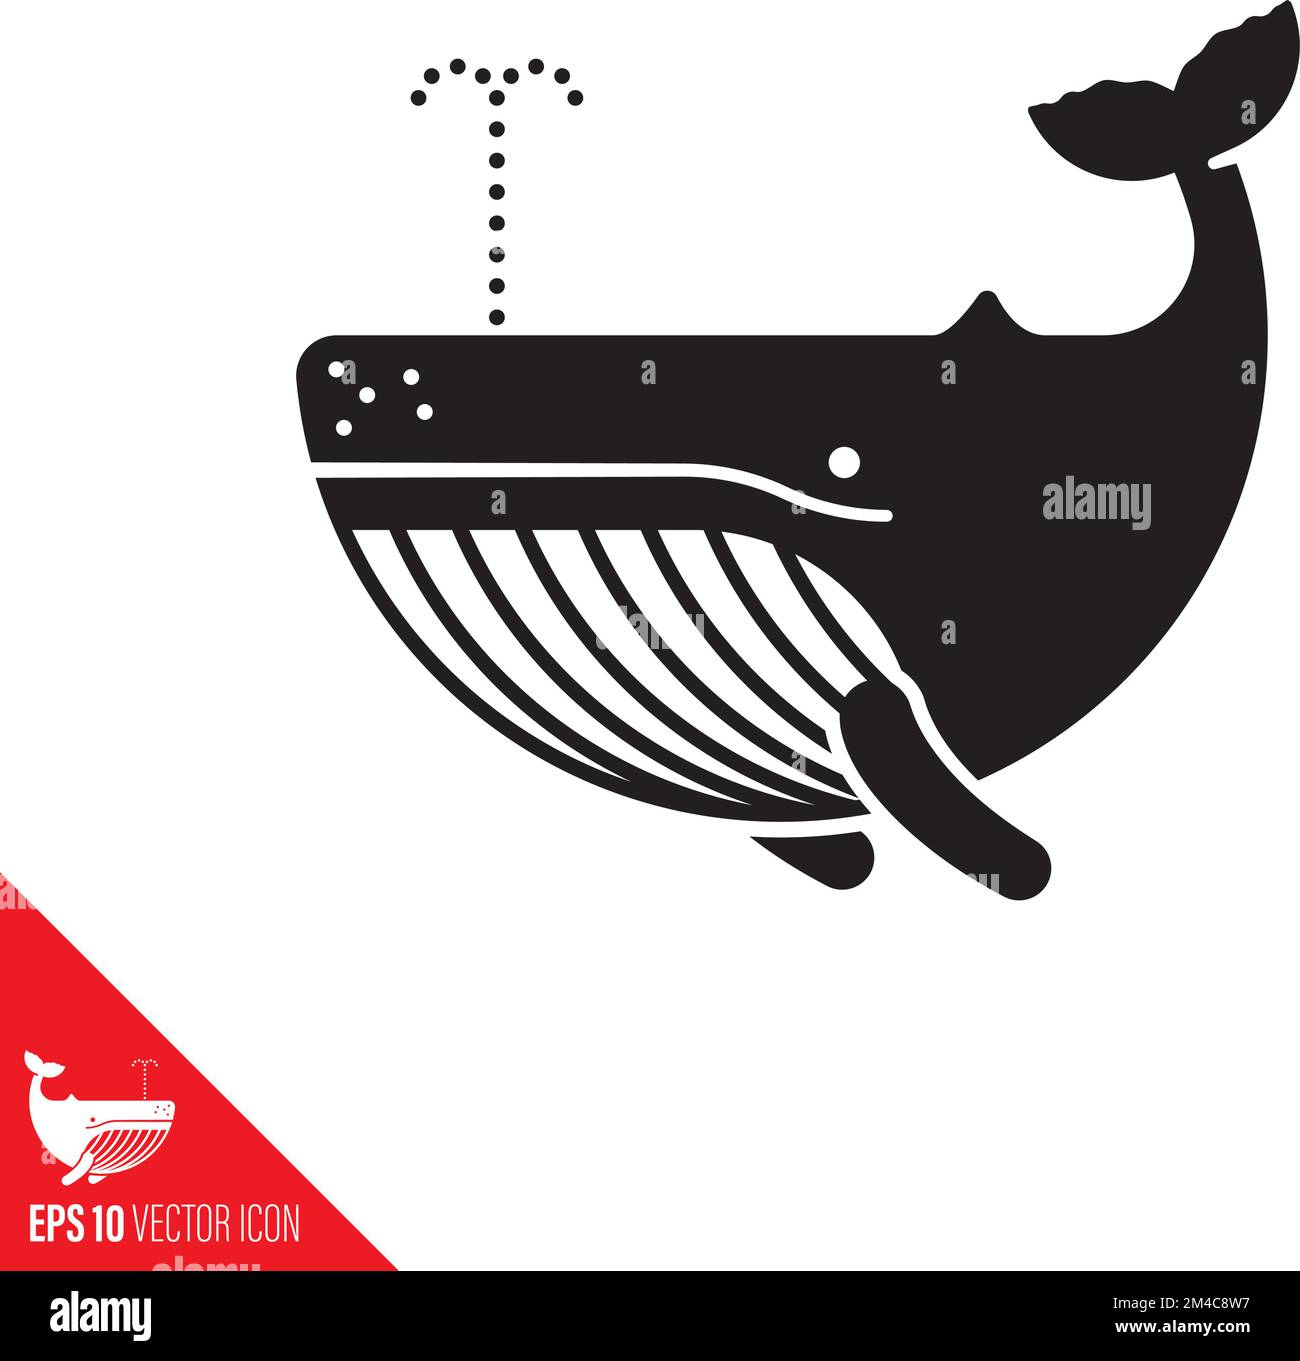 Icona del vettore balena humpback. Simbolo della vita marina e della specie aredata. Illustrazione Vettoriale